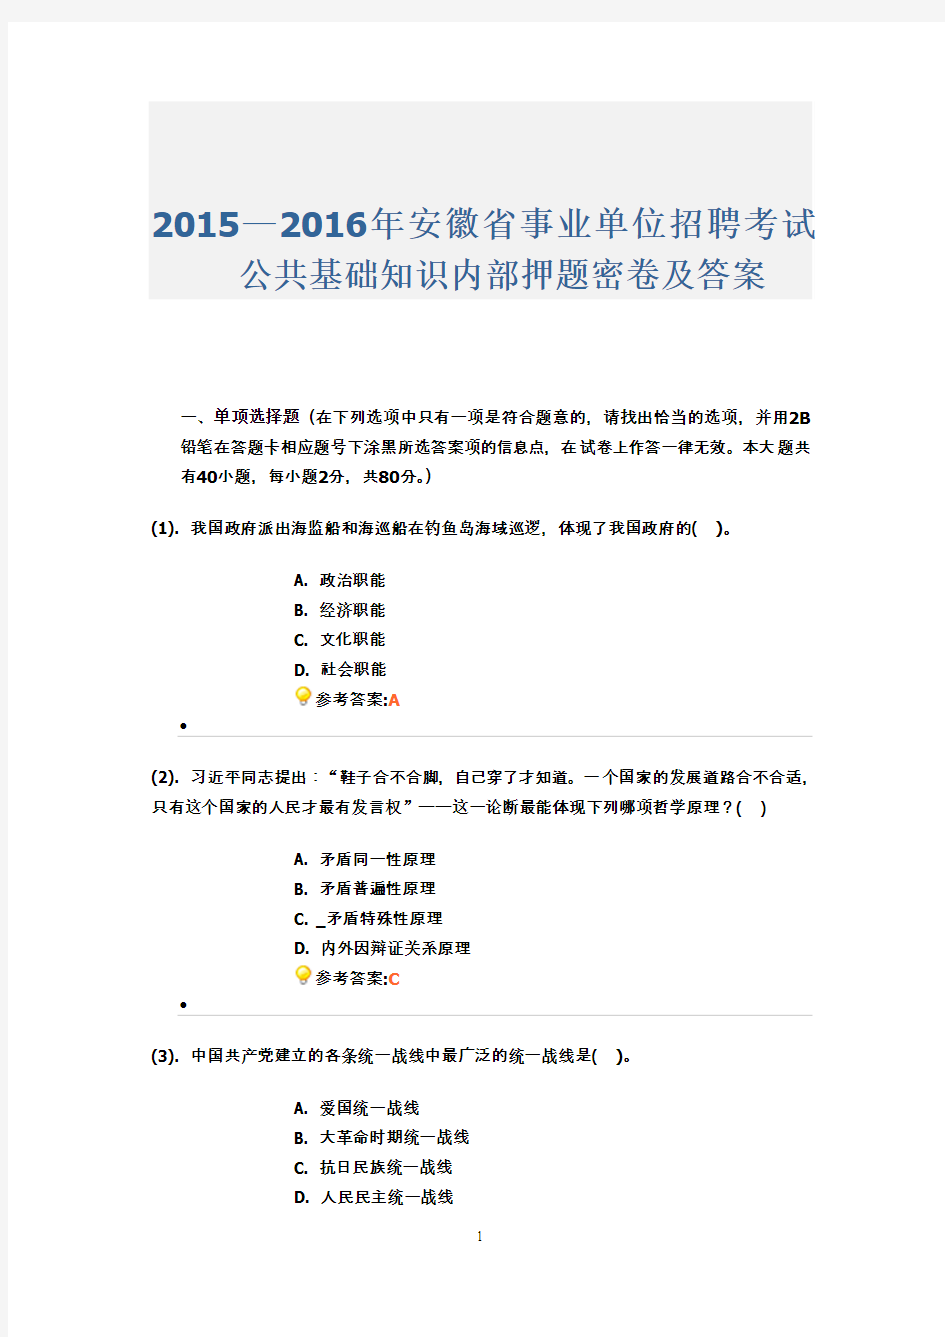 2015—2016年安徽省事业单位招聘考试公共基础知识内部押题密卷及答案